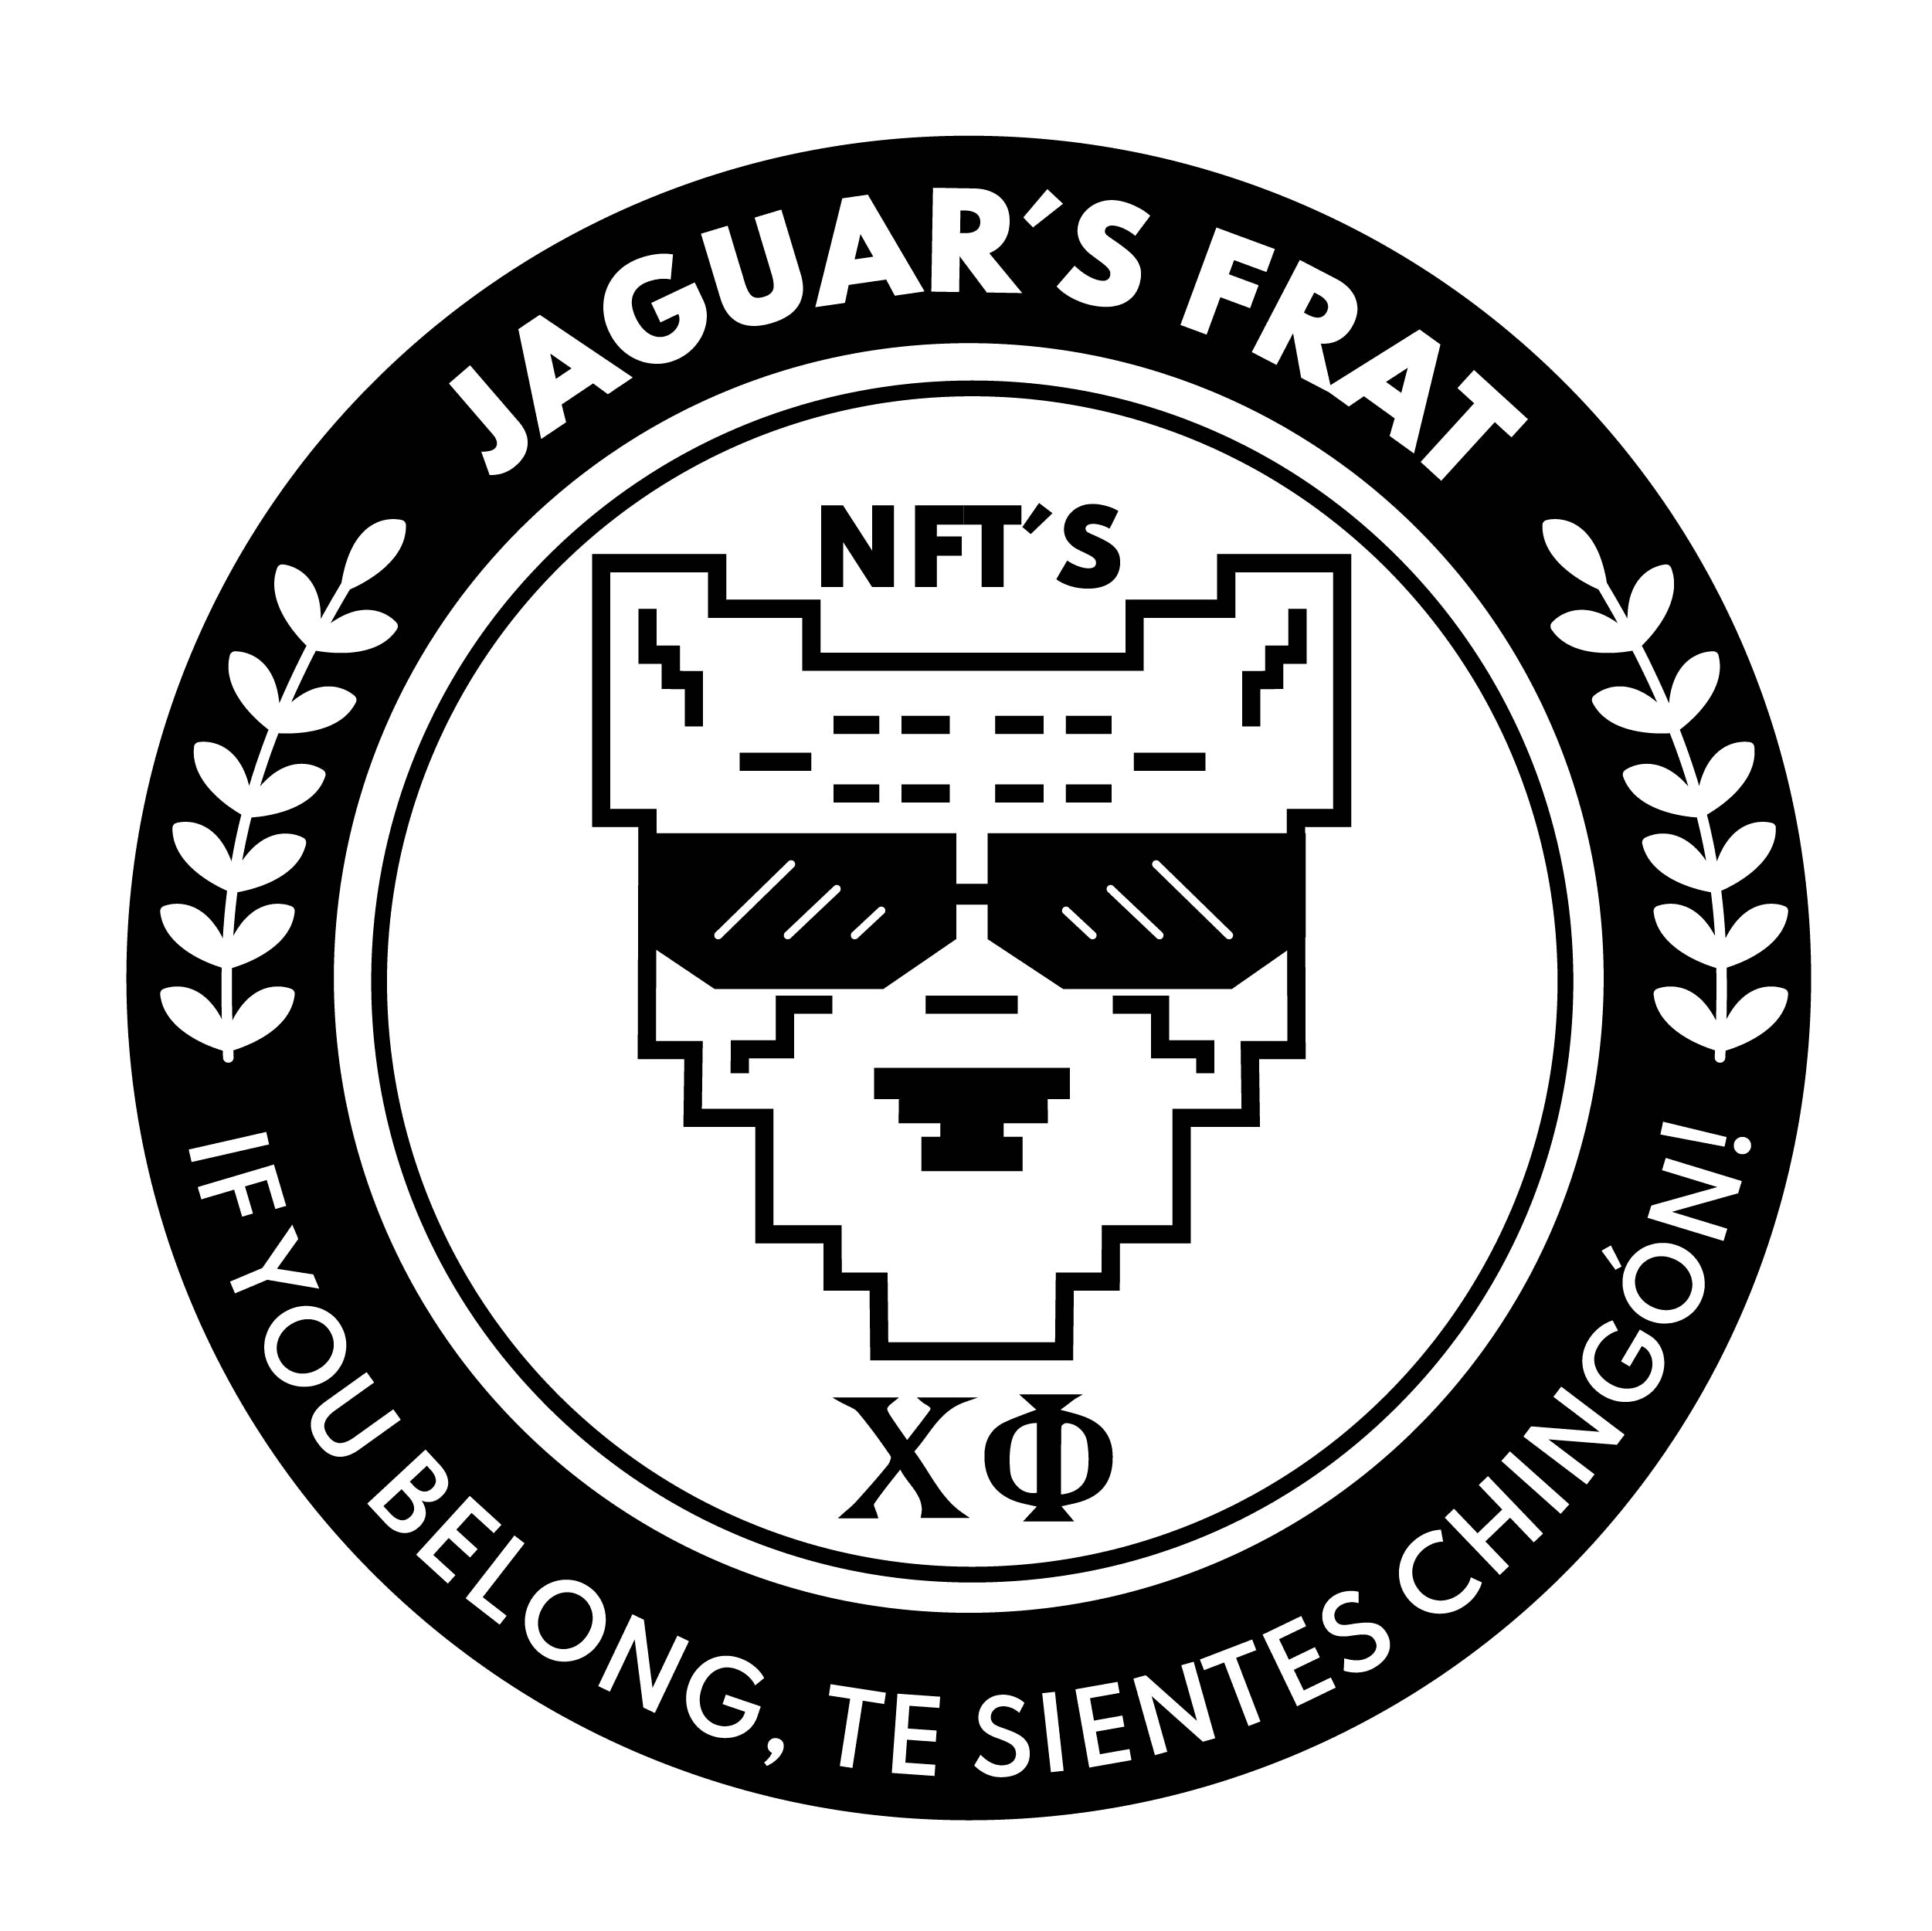 JaguarsFrat